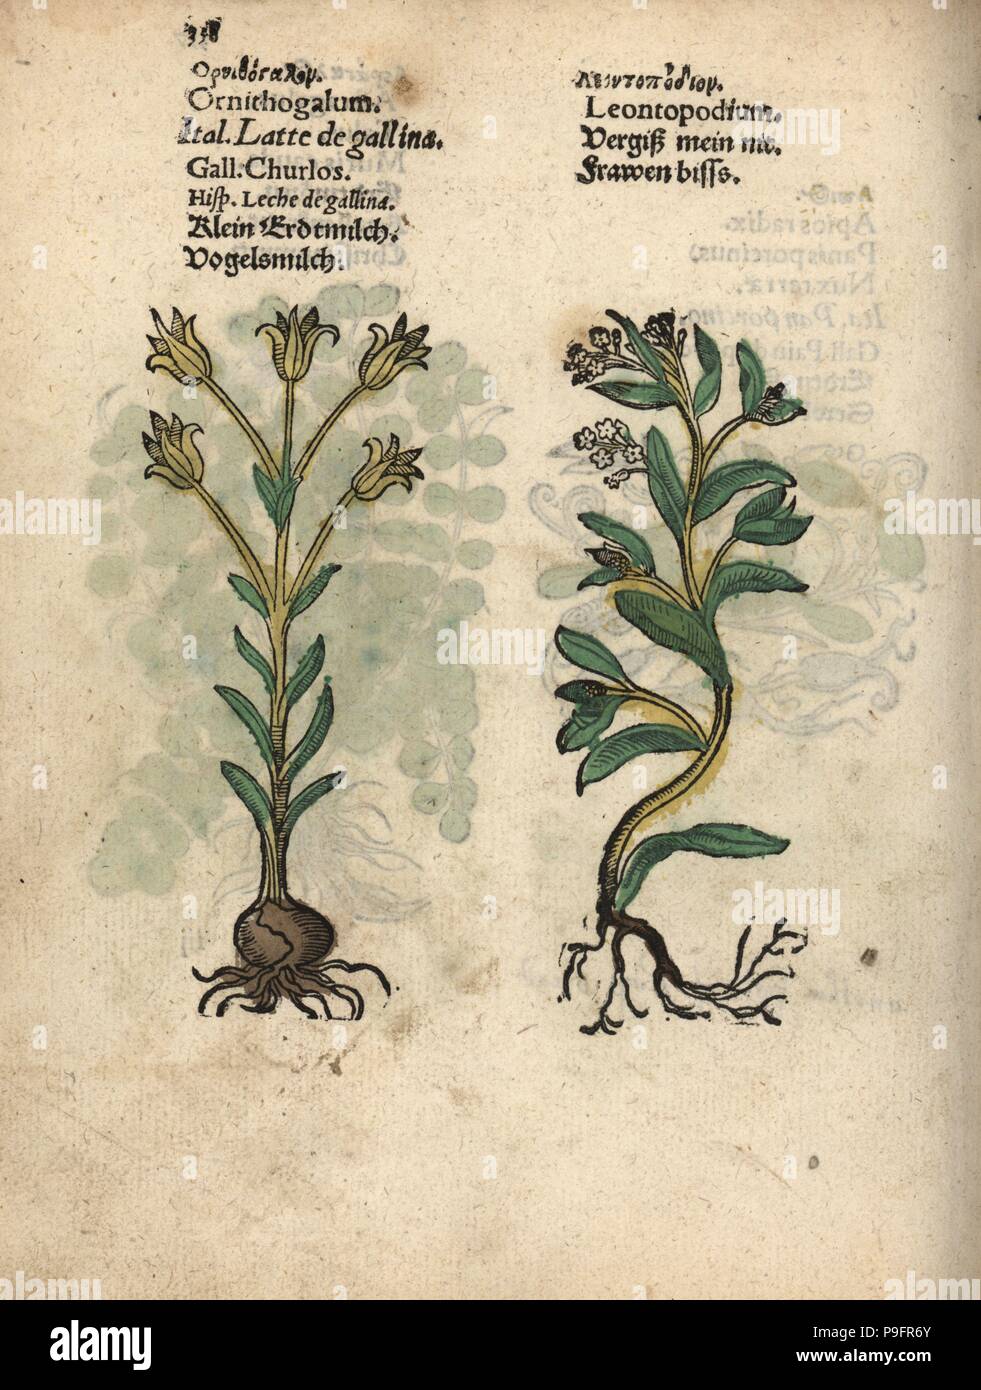 Étoile de Bethléem, Ornithogalum umbellatum, et edelweiss, Leontopodium  alpinum. Gravure sur bois coloriée à la gravure d'une illustration botanique  d'Adam Lonicer Krauterbuch's, ou de plantes médicinales, Francfort, 1557.  Cette d'une édition pirate